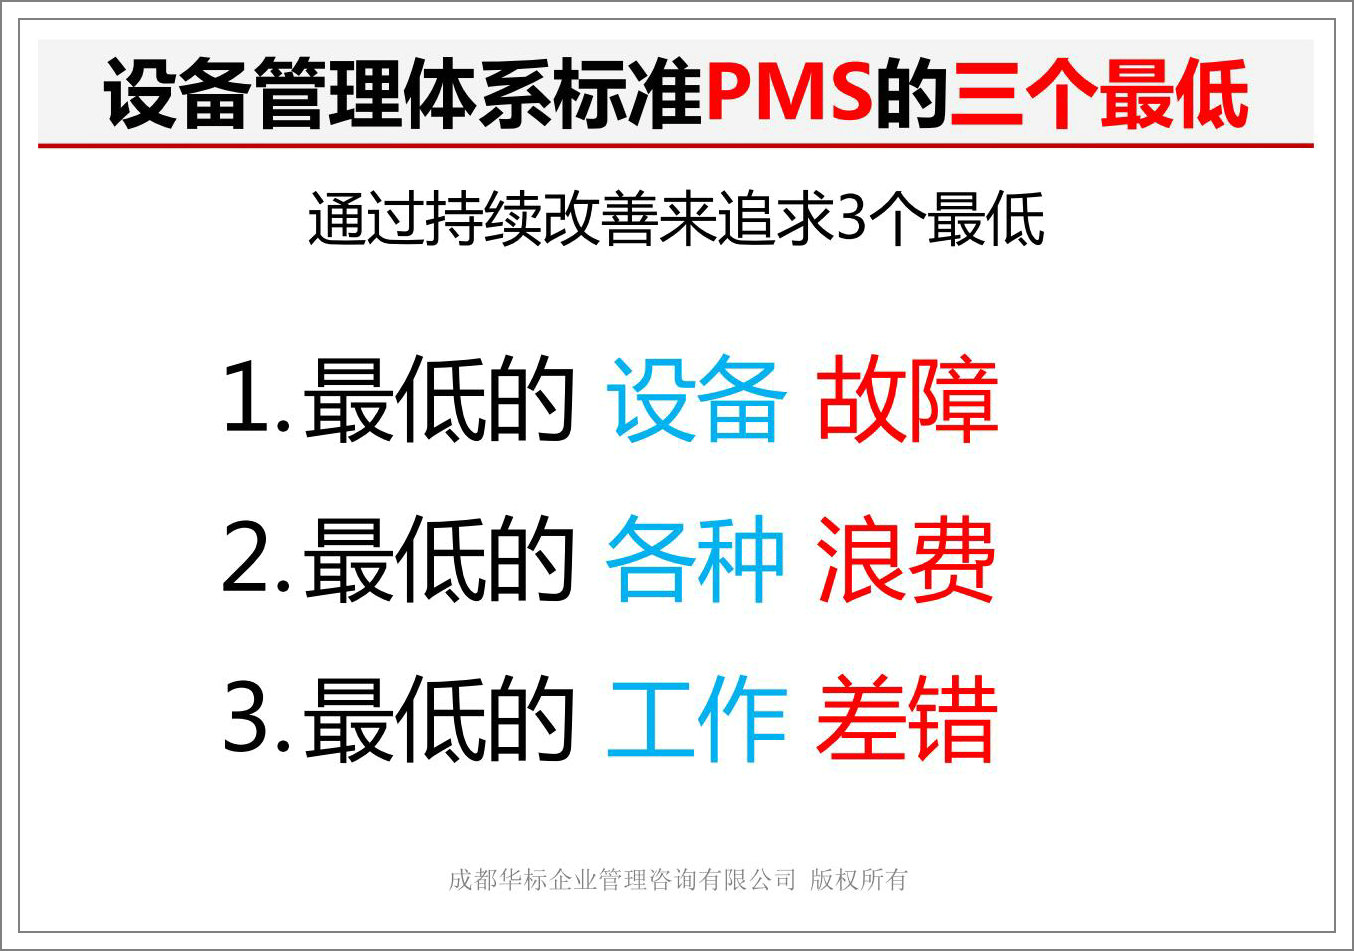 設備管理體系標準PMS的三個最低.jpg